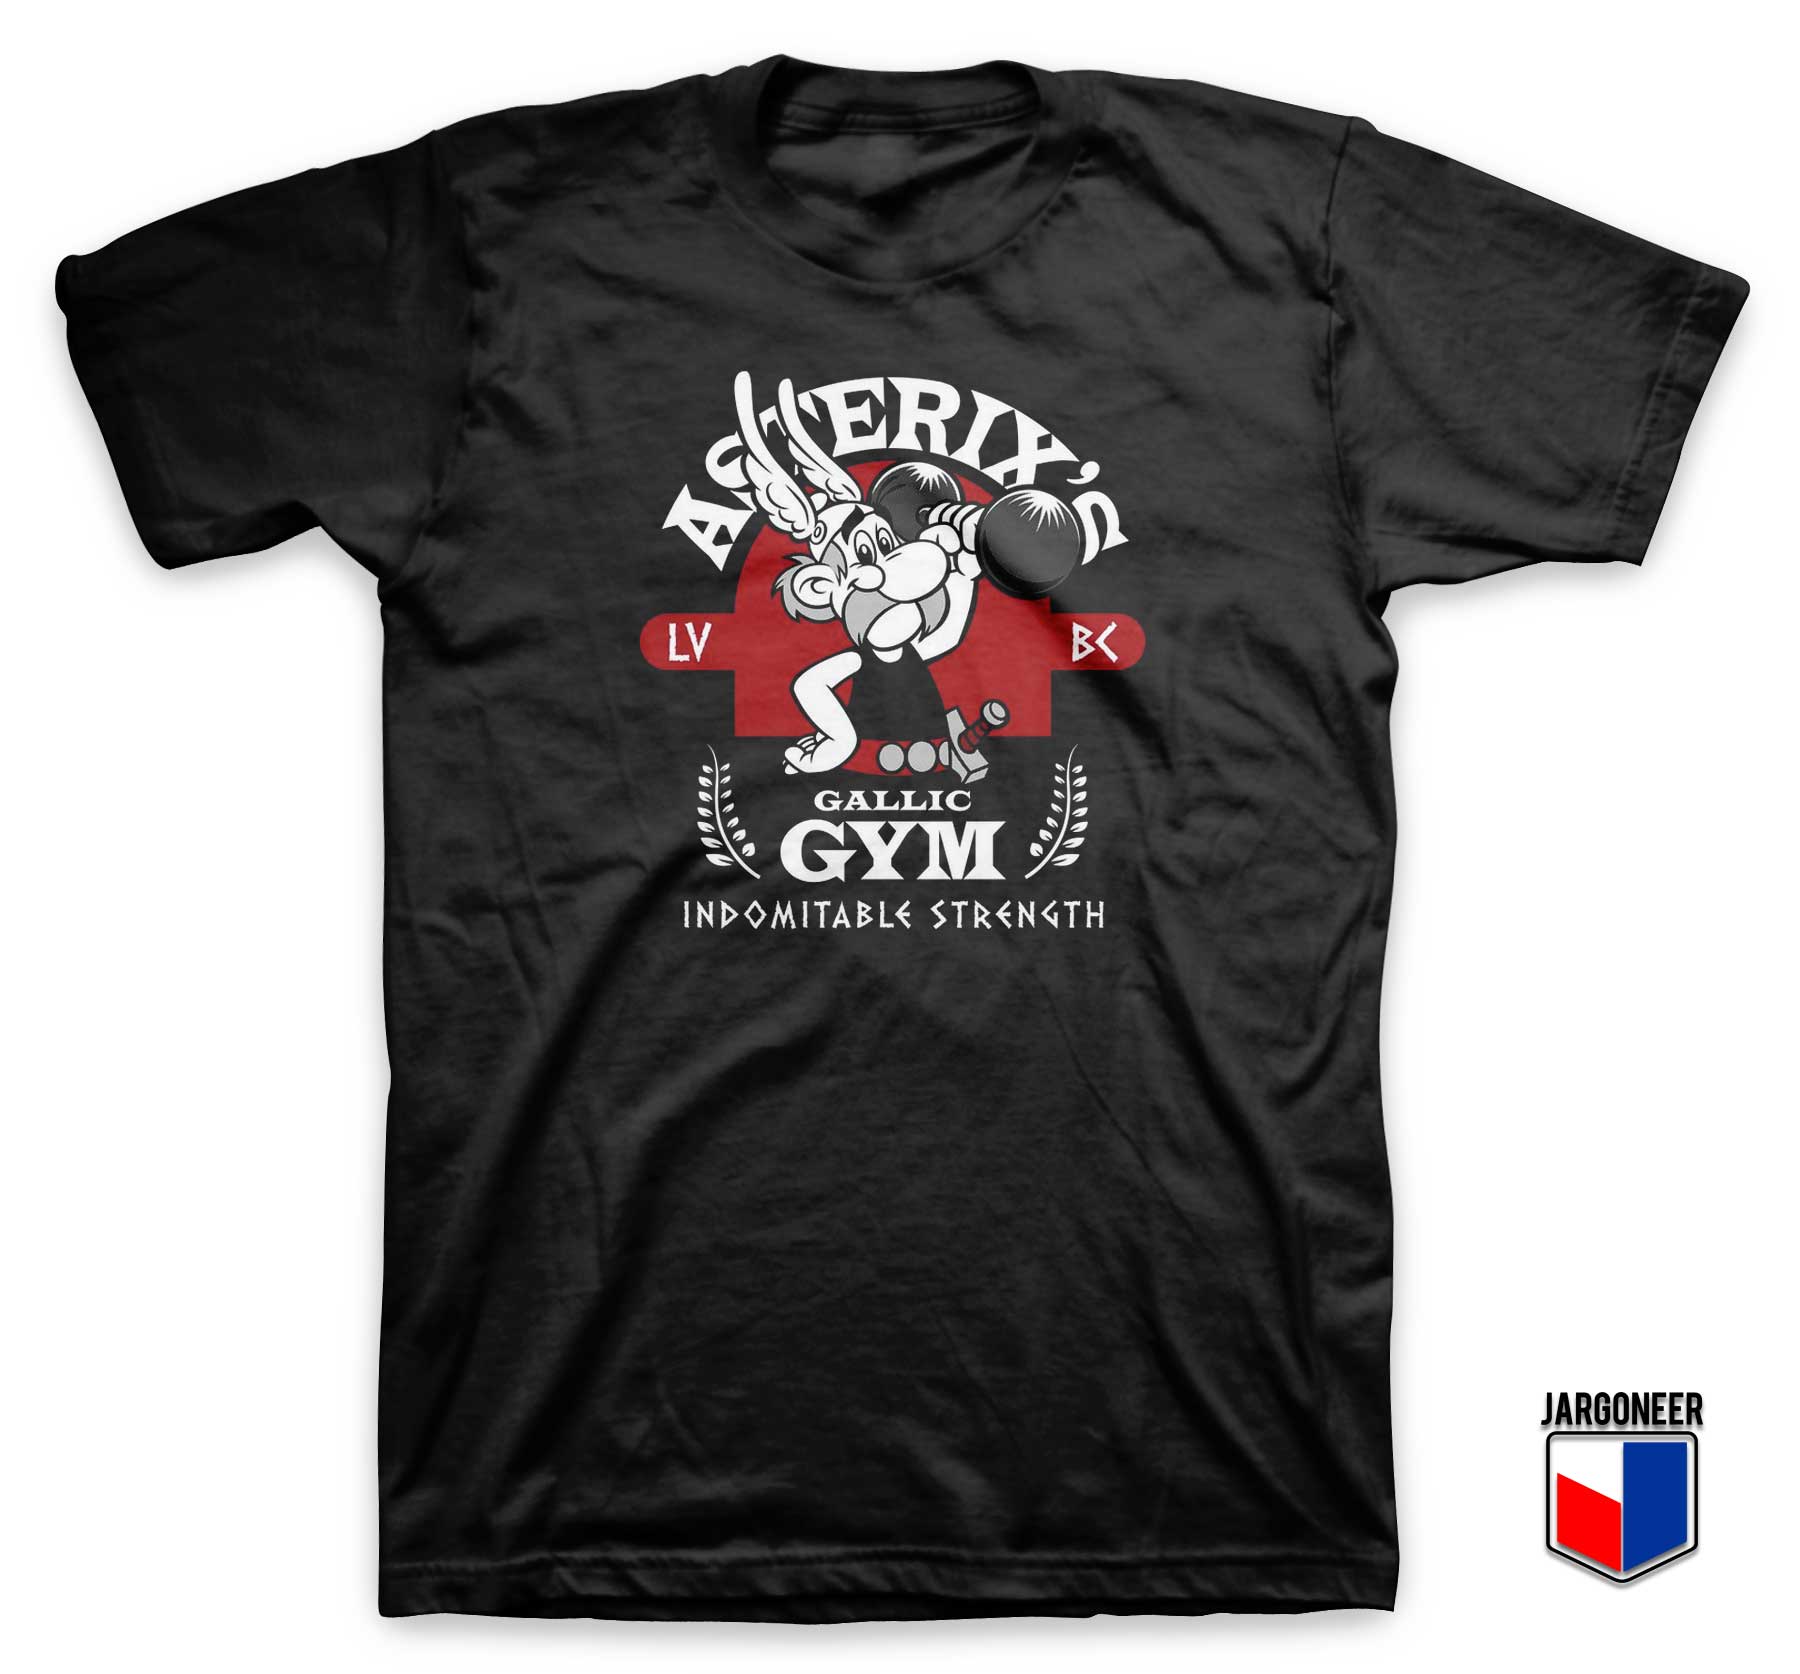 Asterixs Gallic Gym T Shirt - Shop Unique Graphic Cool Shirt Designs